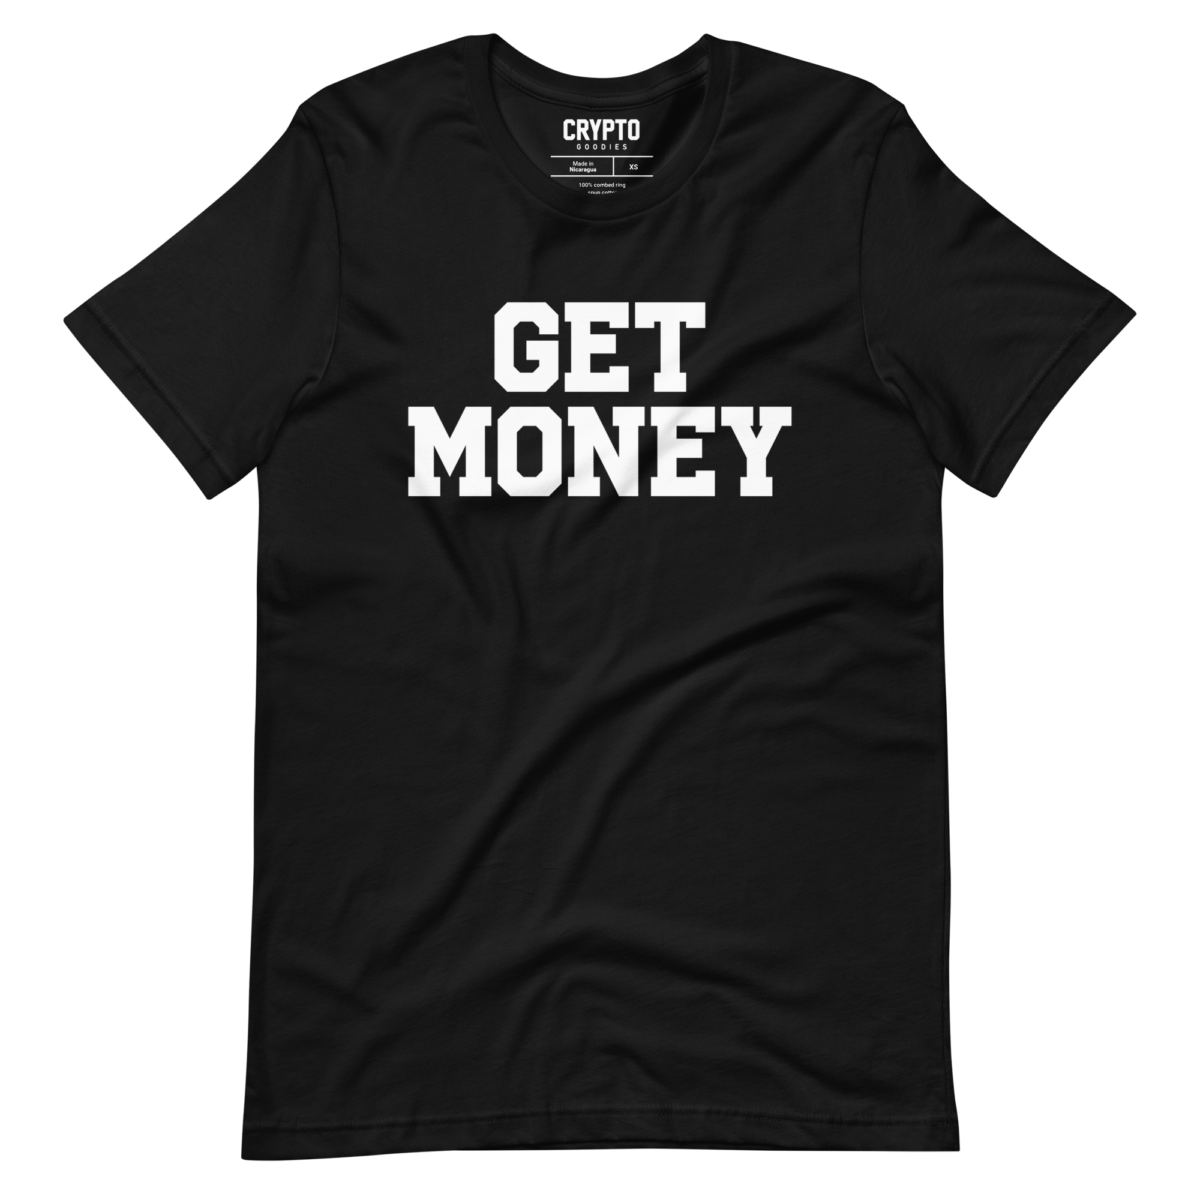 unisex staple t shirt black front 63a32415ecda4 - Get Money T-Shirt